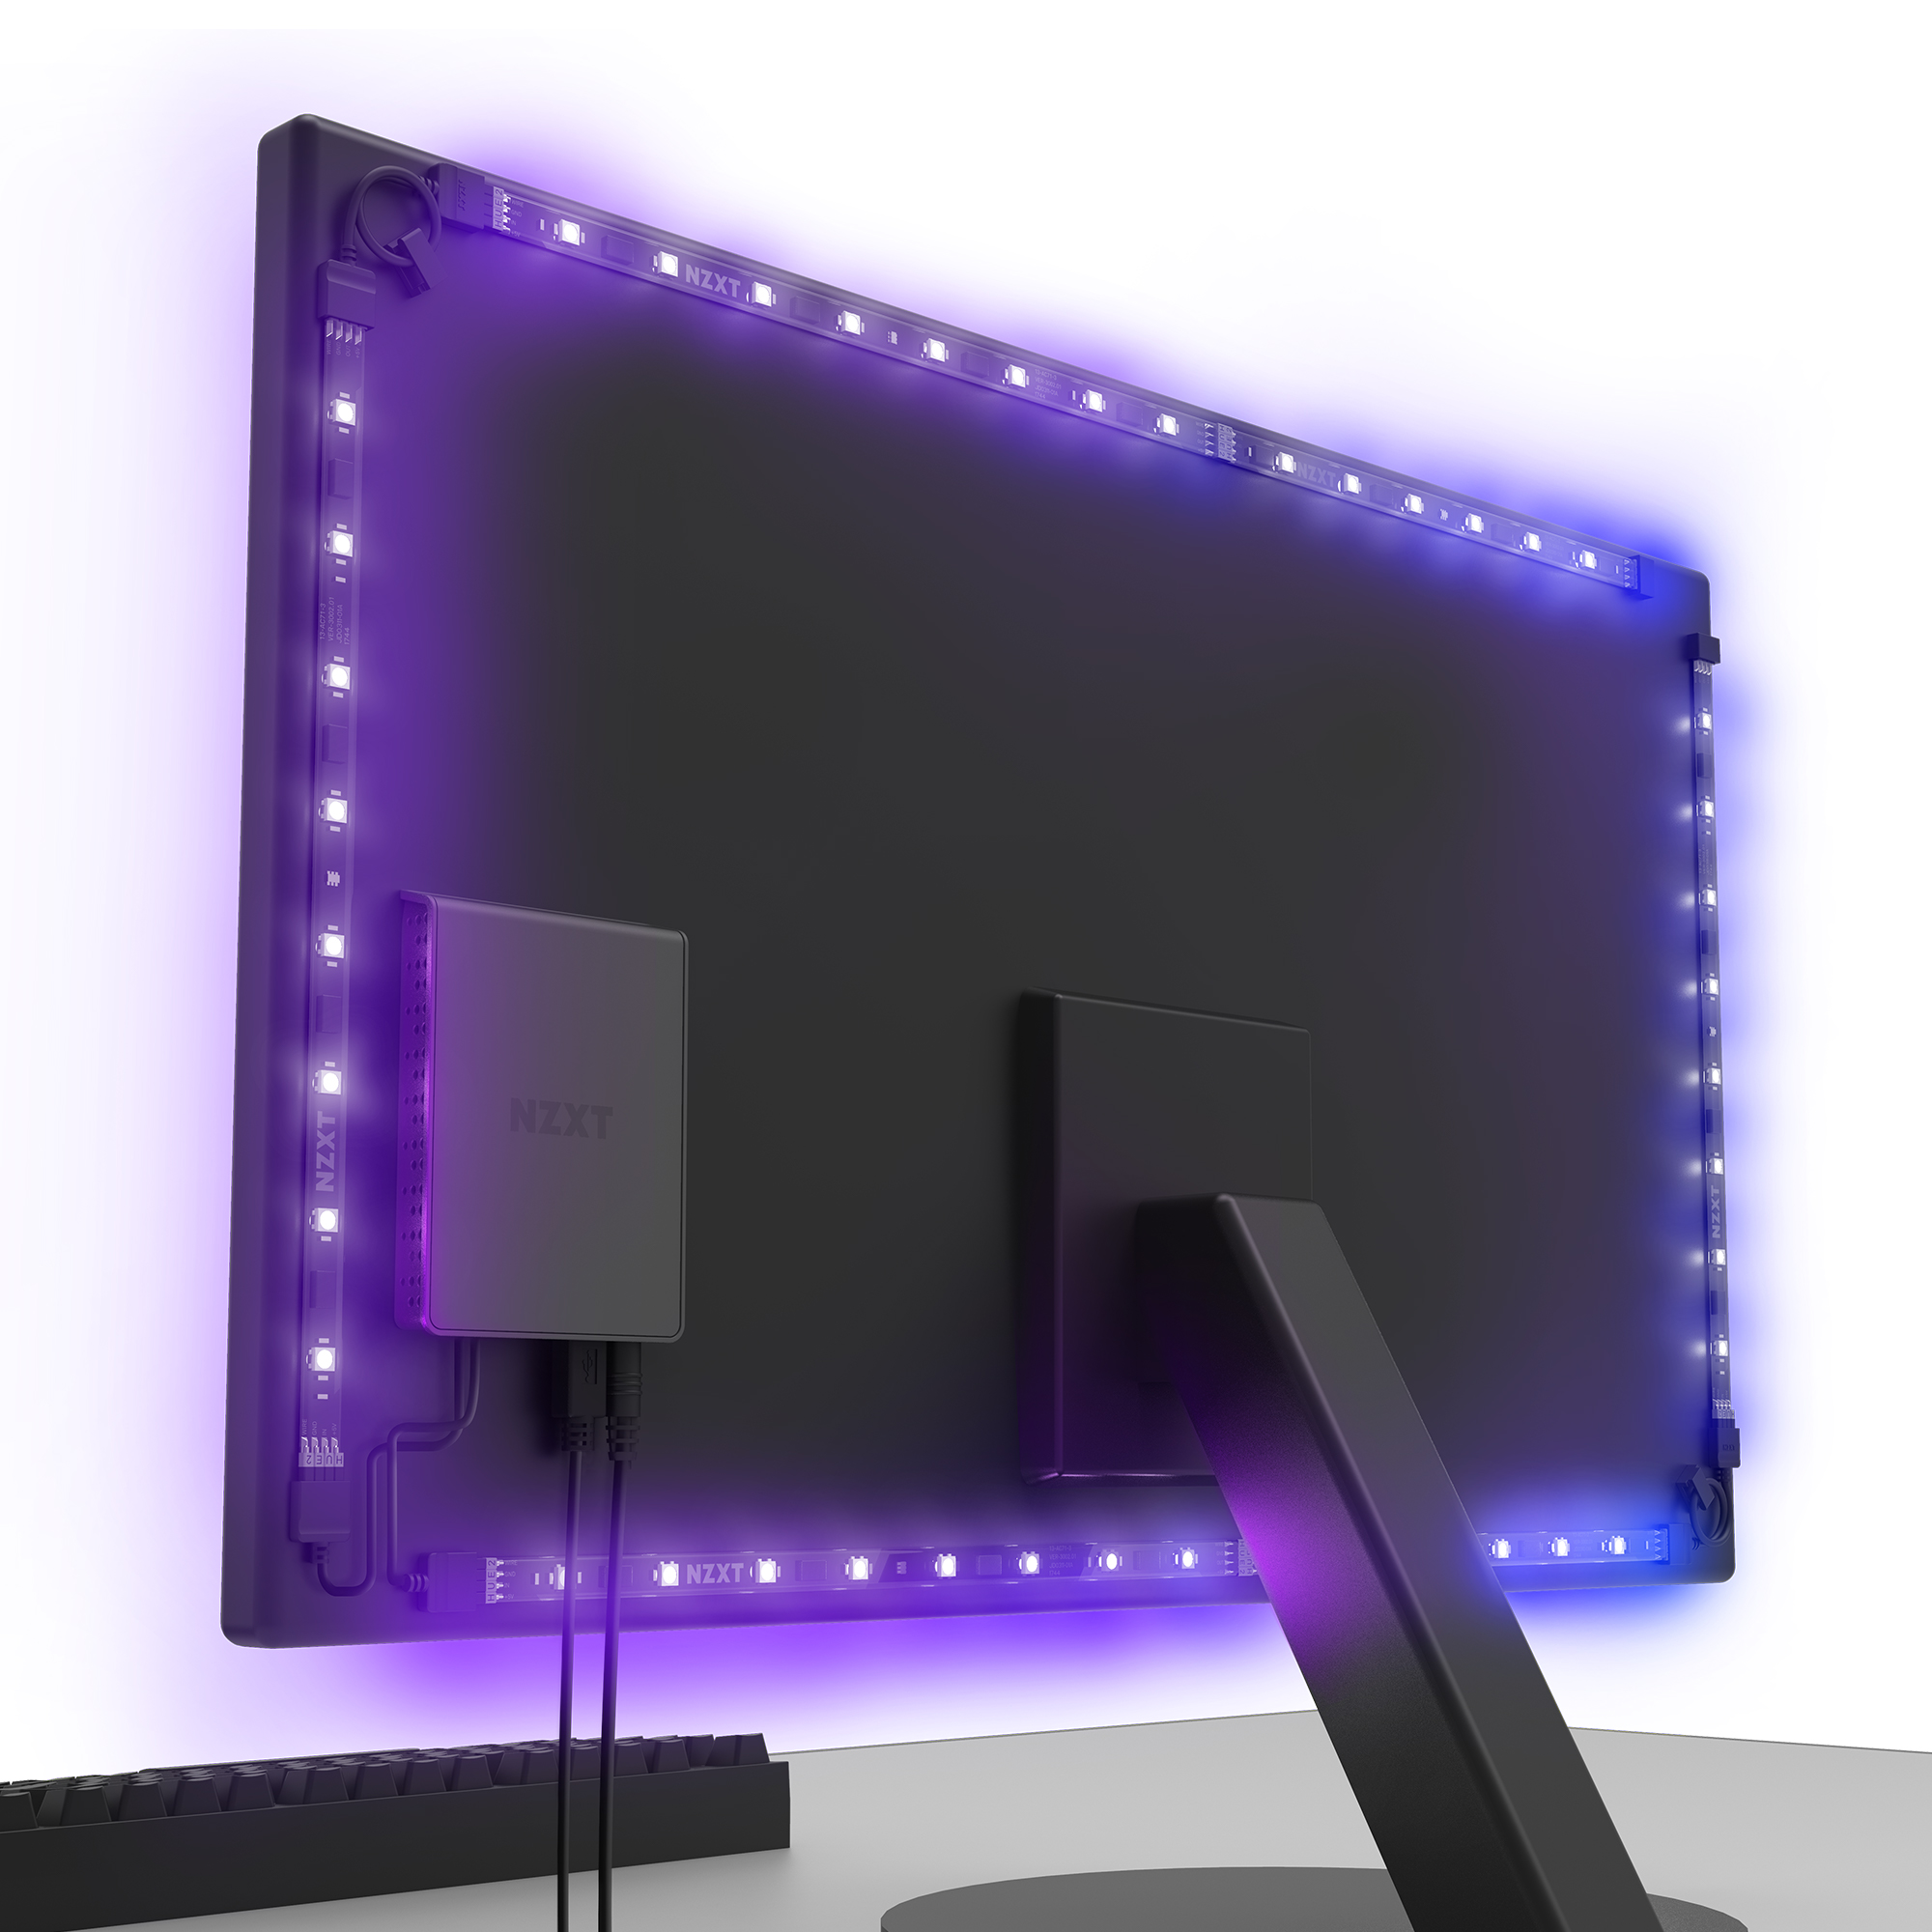 NP: Los 10 nuevos productos en la familia HUE 2 RGB de NZXT ofrecen la mayor línea de accesorios de iluminación RGB para PC